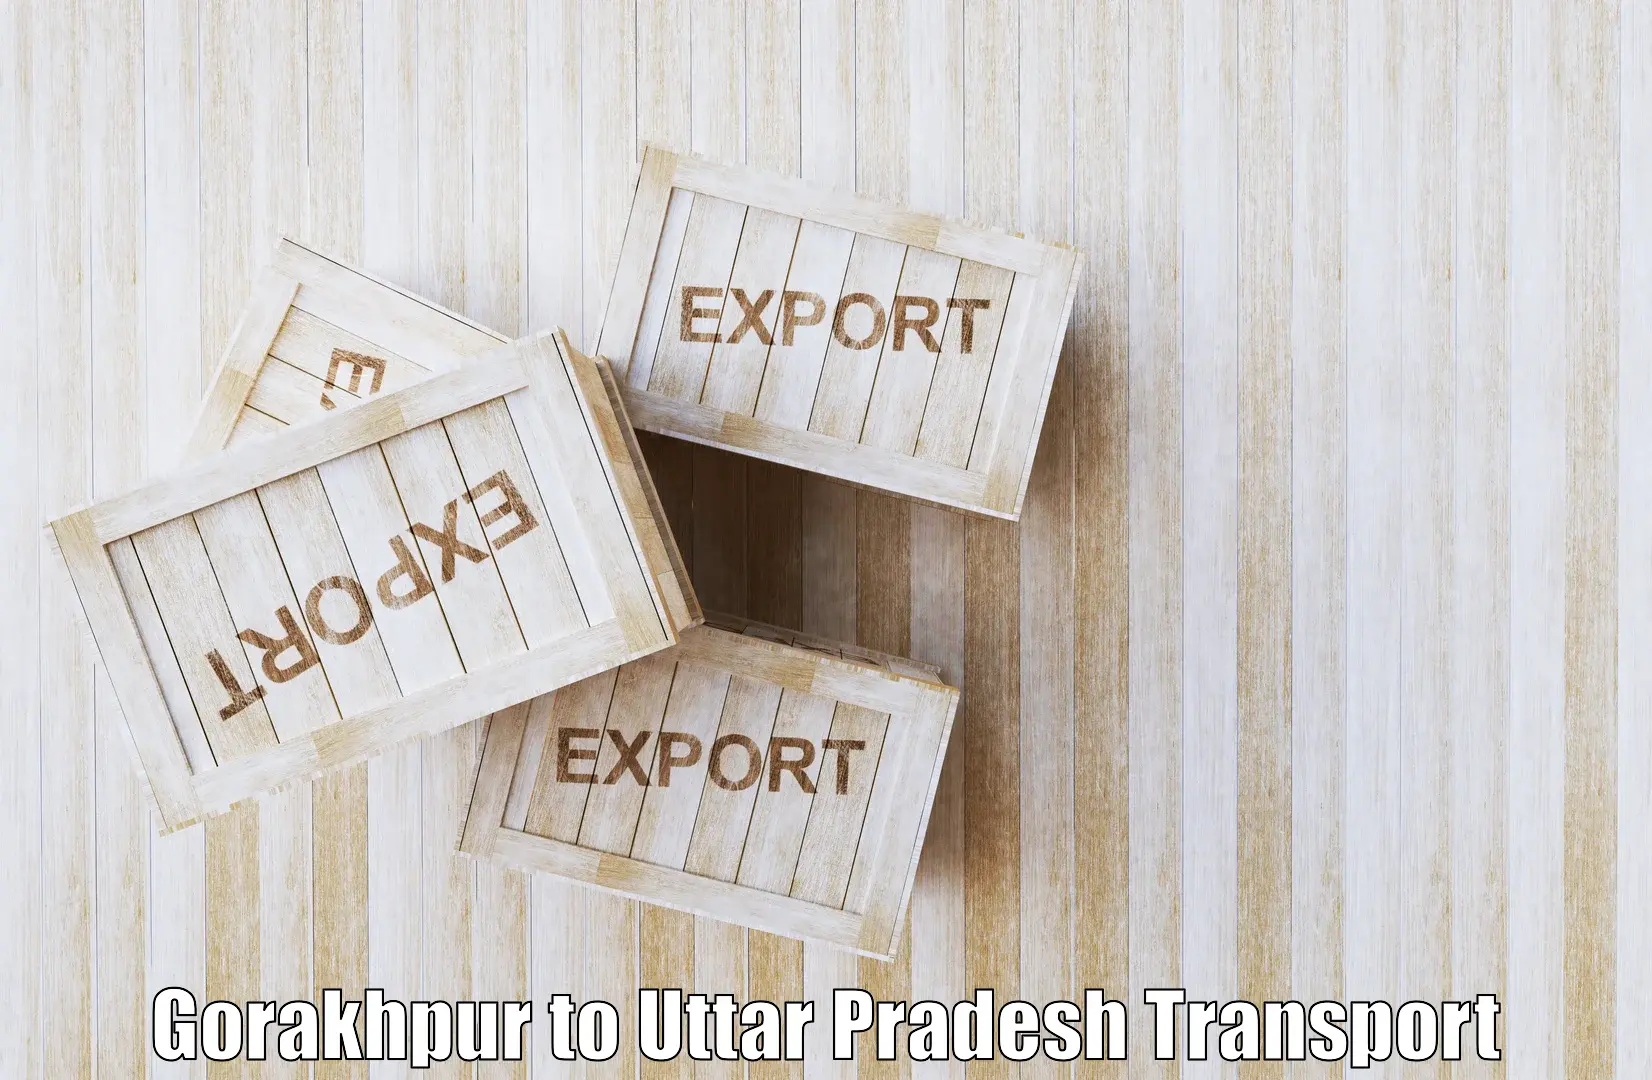 Container transportation services Gorakhpur to Prayagraj